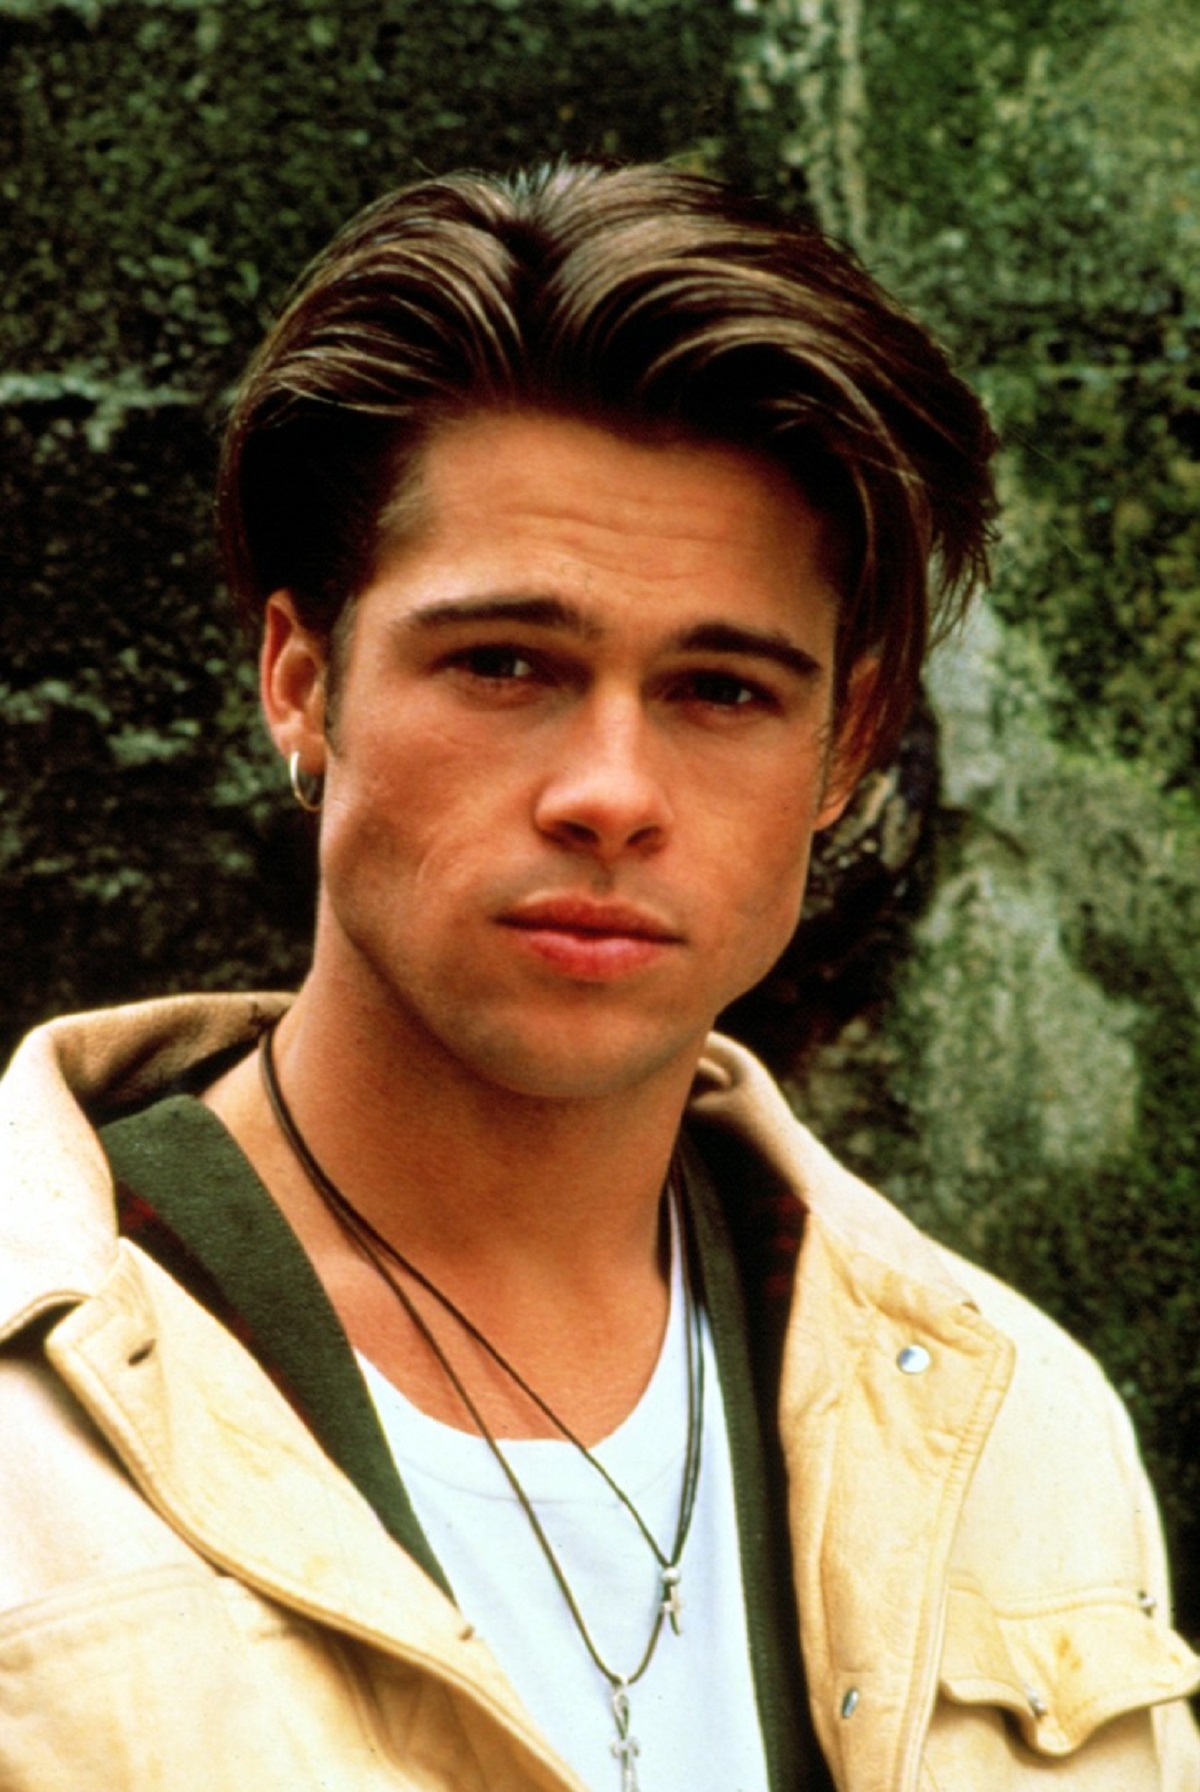 Brad Pitt cu părul ciufulit într-o imagine din adolescența sa surprinsă în jurul anului 1990